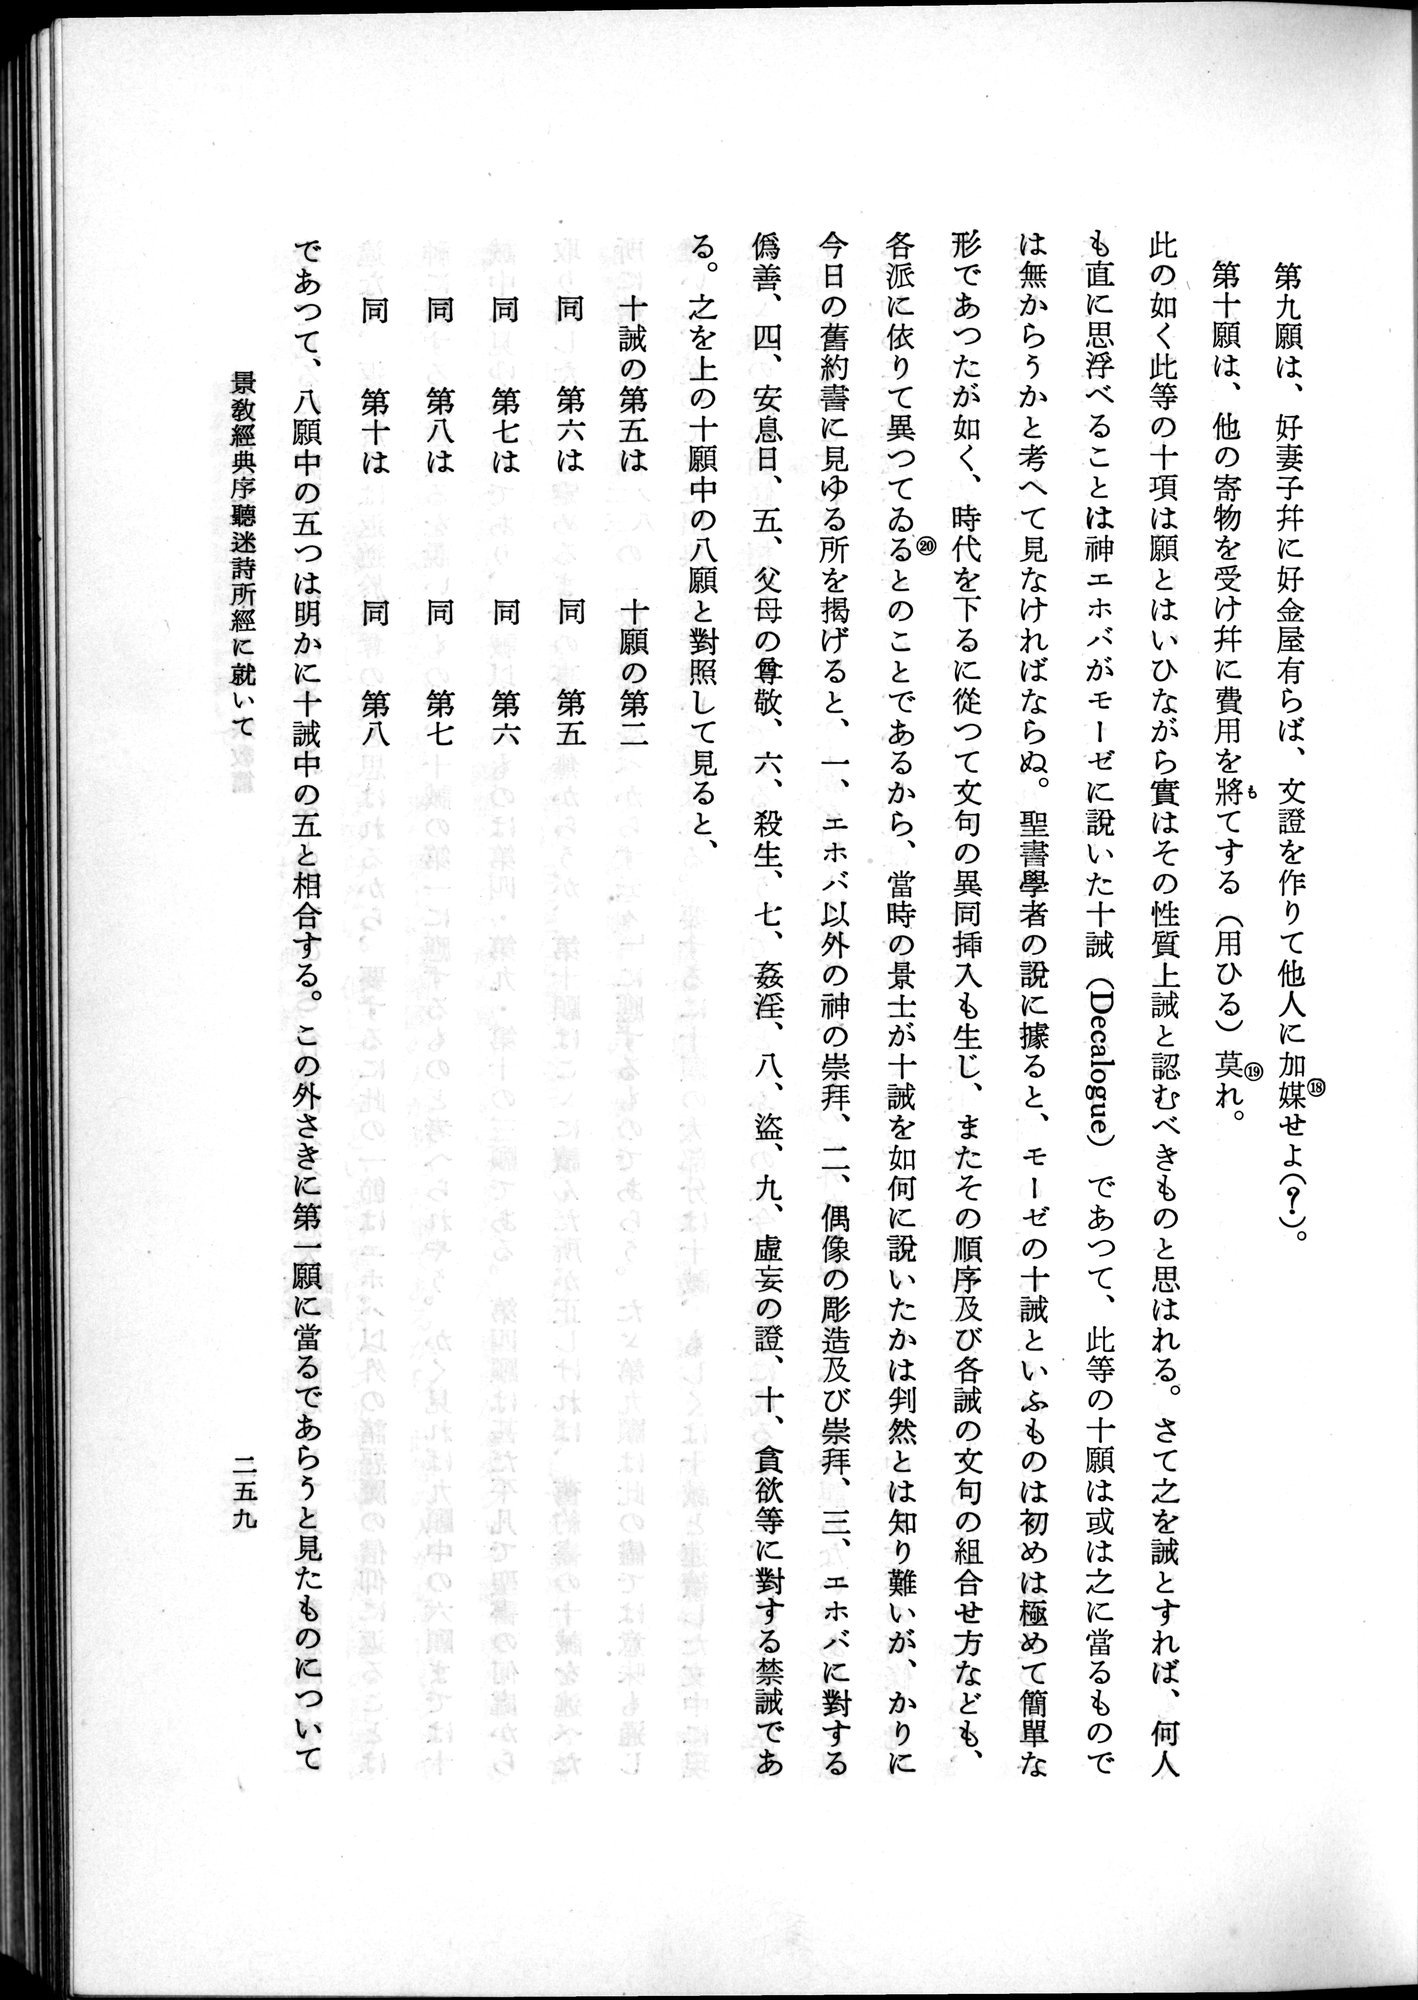 羽田博士史学論文集 : vol.2 / Page 321 (Grayscale High Resolution Image)